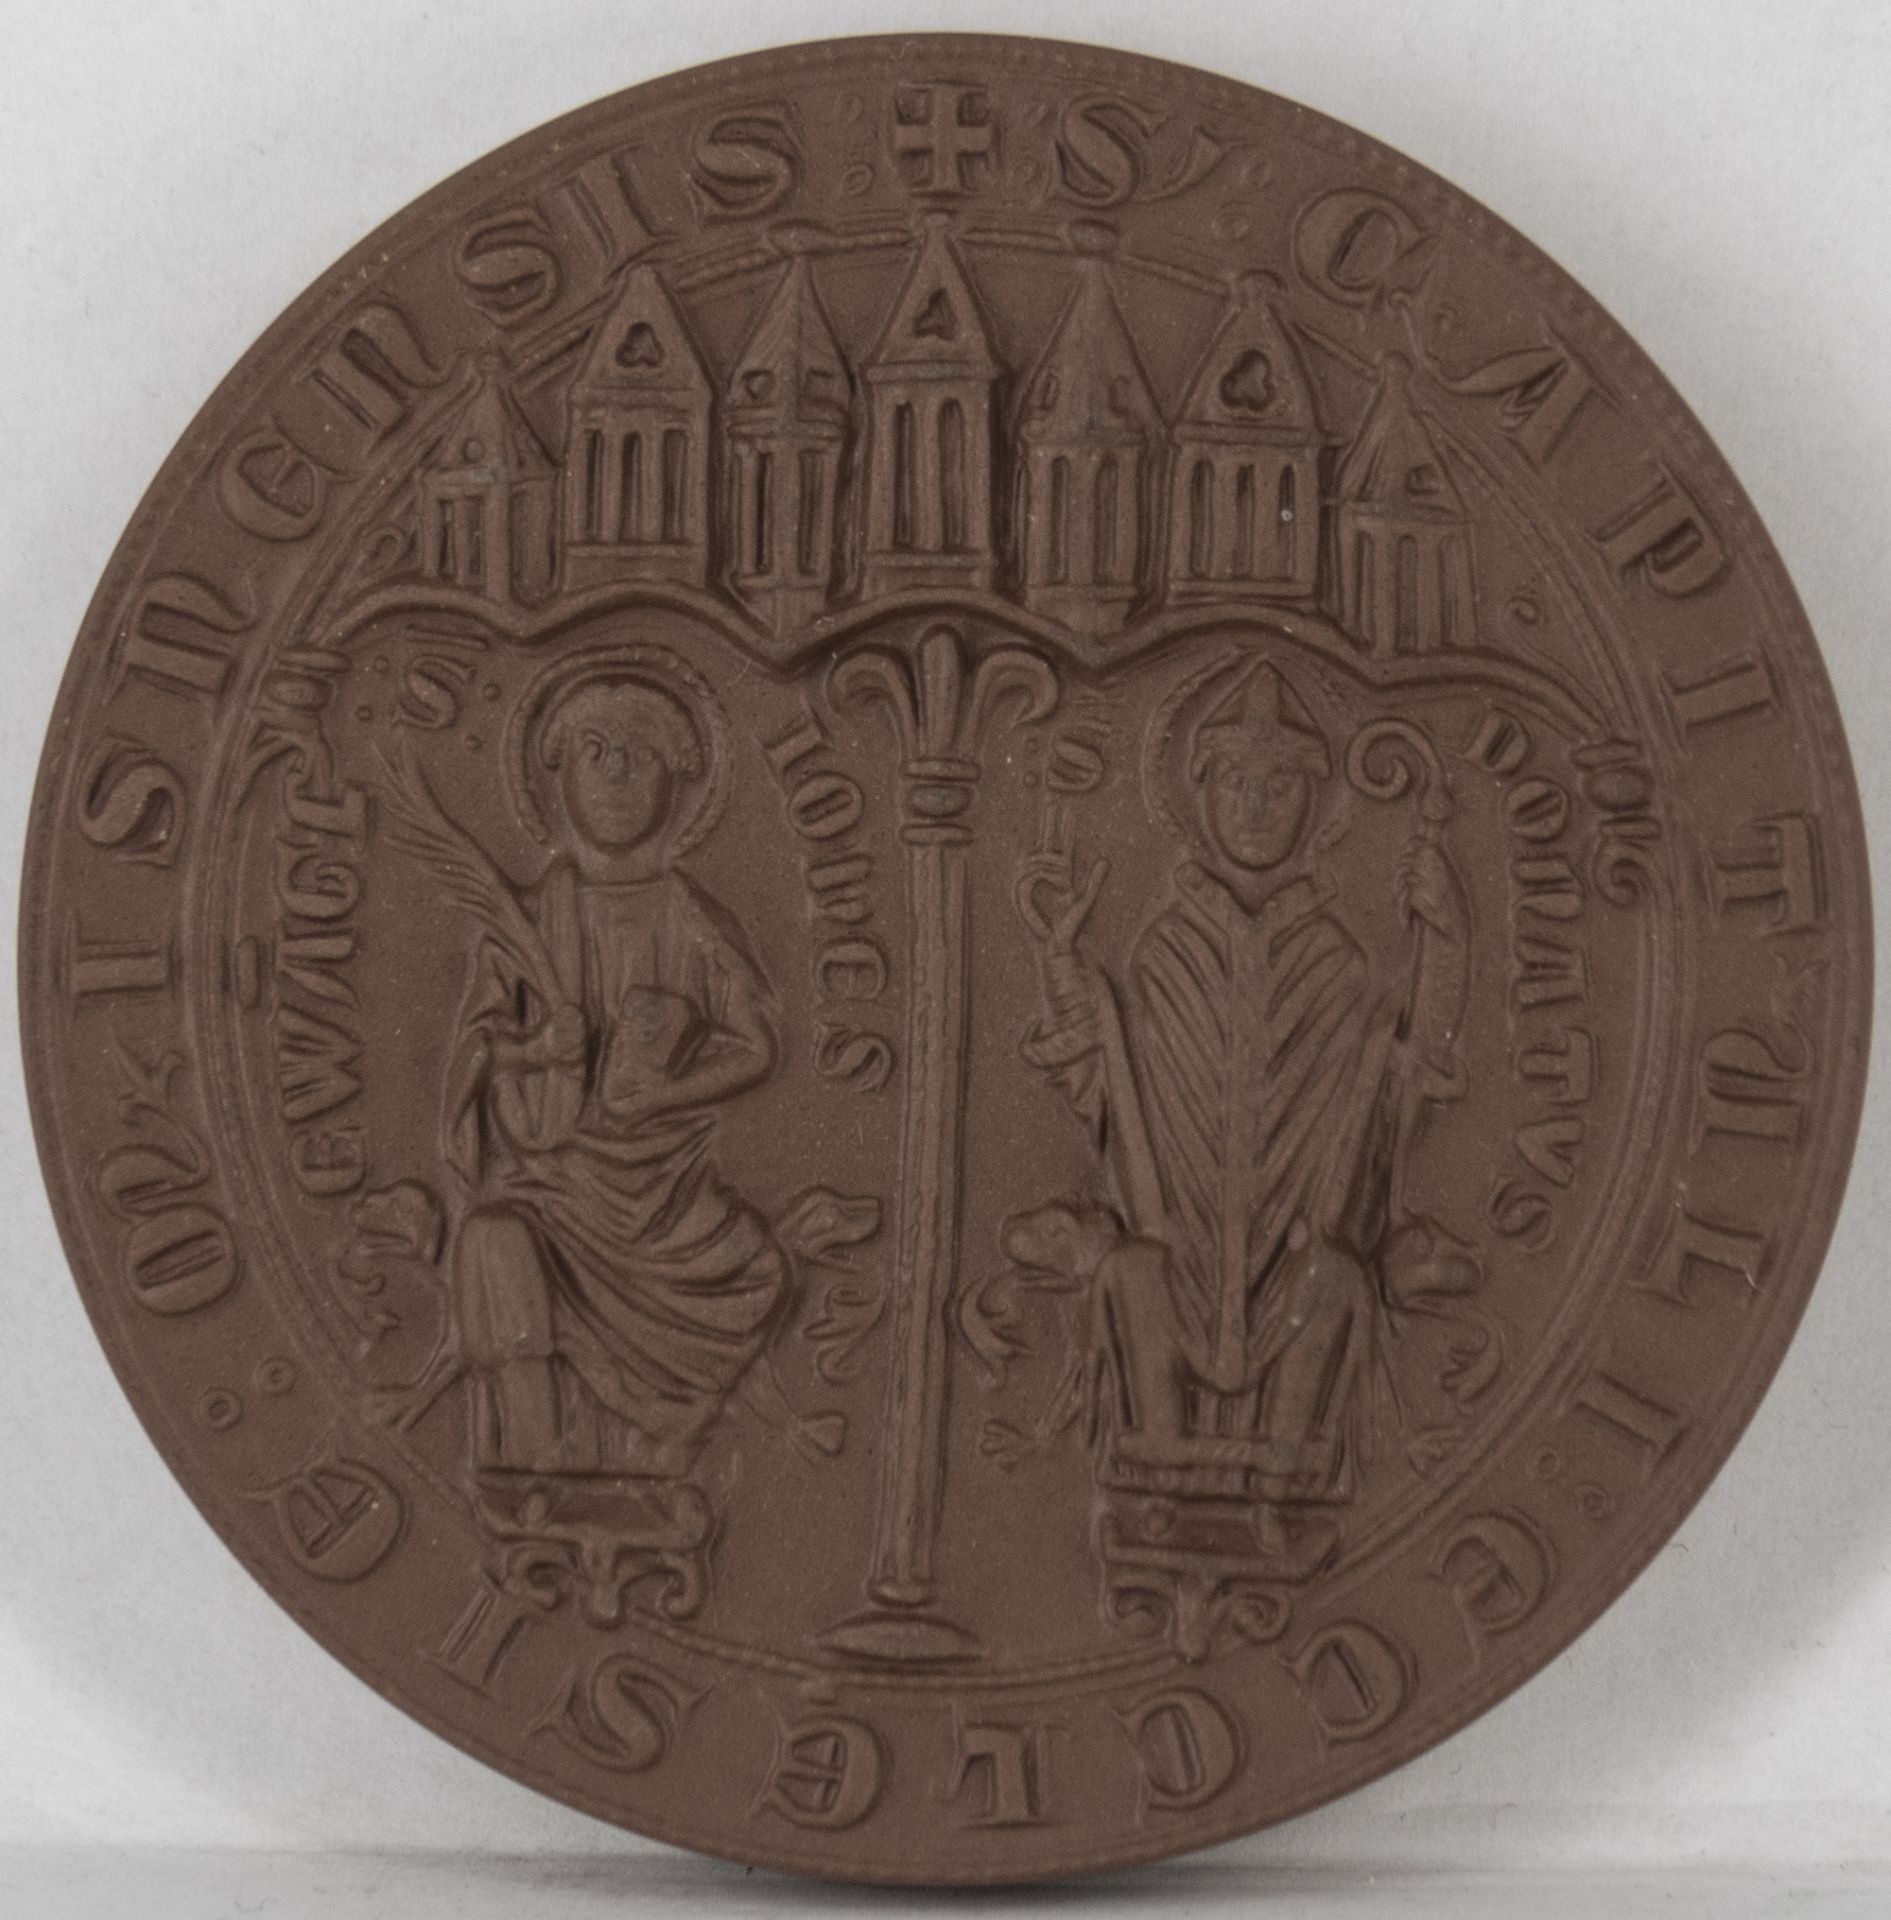 Porzellan - Medaille "Hochstift Meissen 968 - 1968", Meißen, Durchmesser: ca. 65 mm. Erhaltung: VZ.